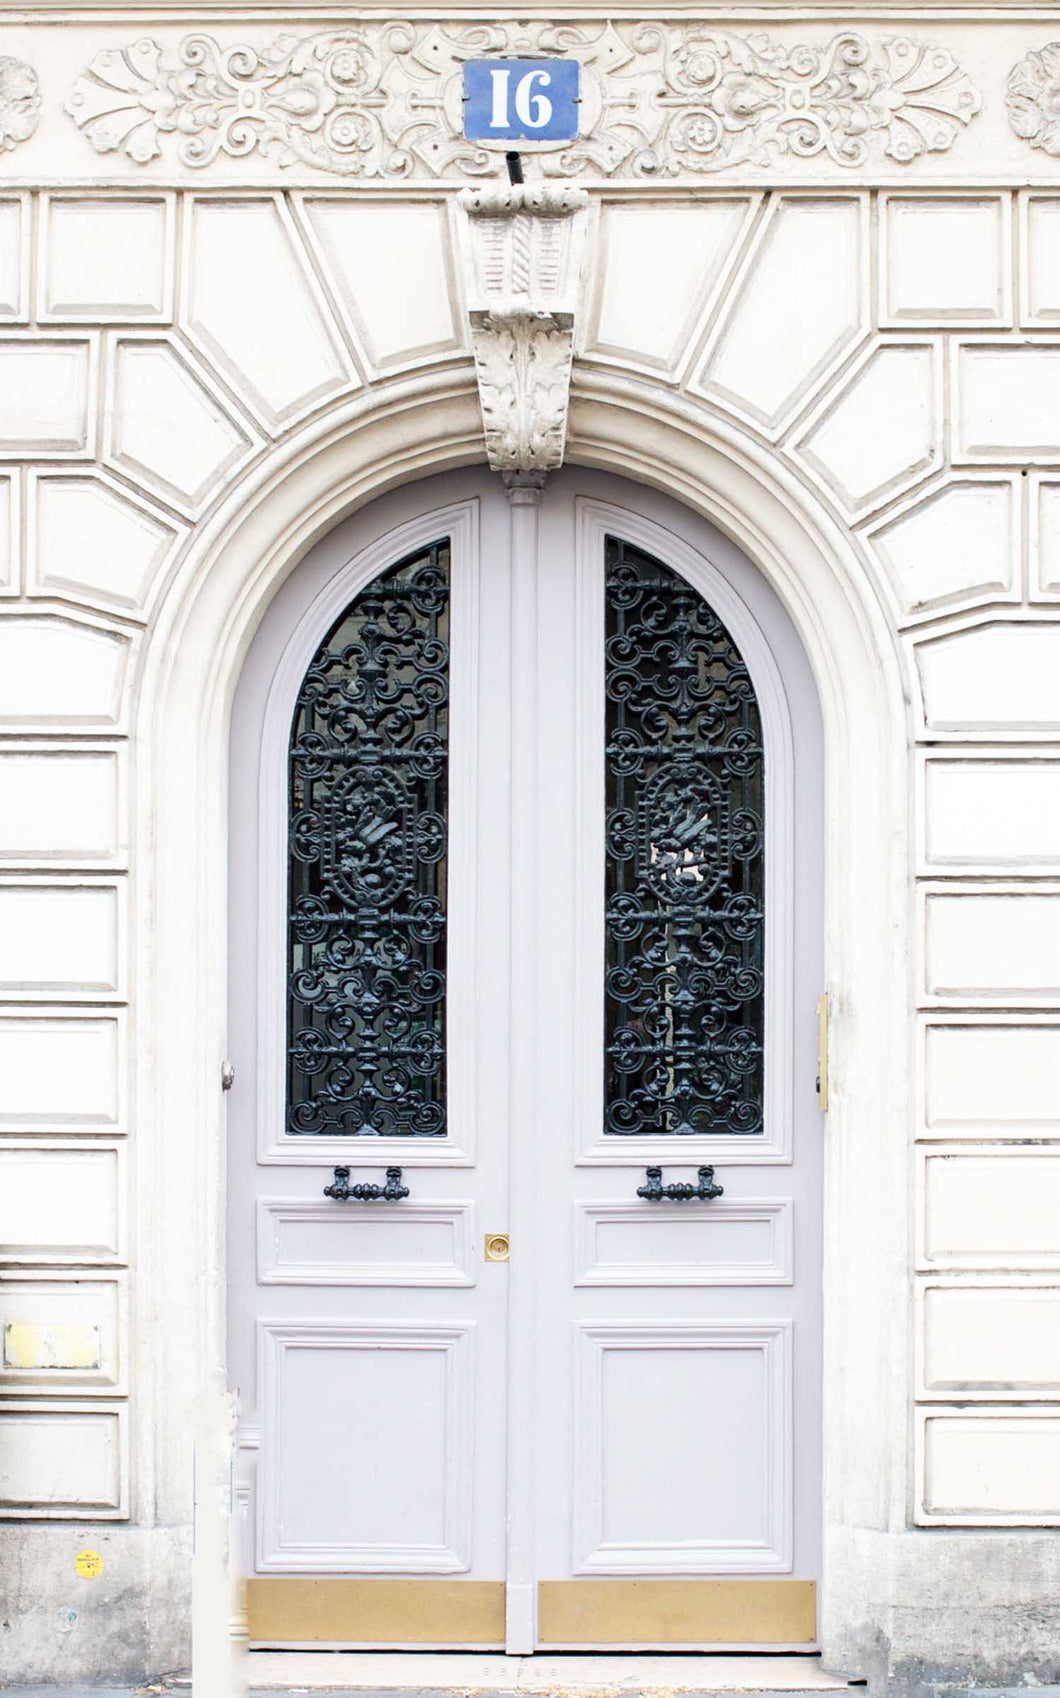 Marseilles Double Iron Doors - Custom Pivot Door